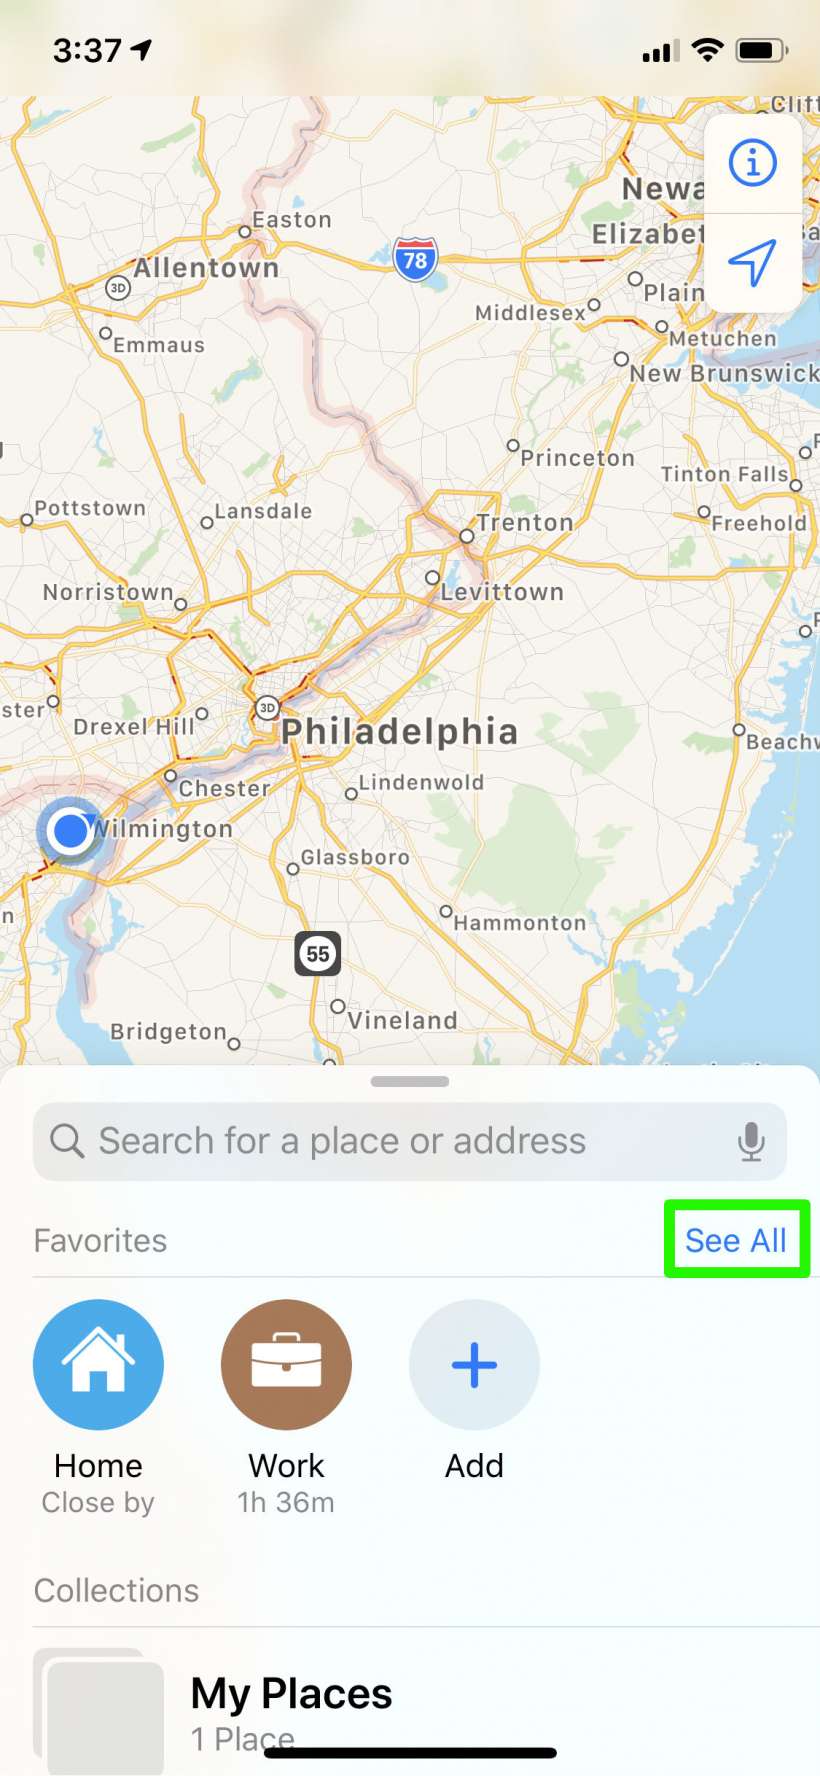 كيفية مشاركة ETA تلقائيًا من تطبيق Maps على iPhone و iPad.